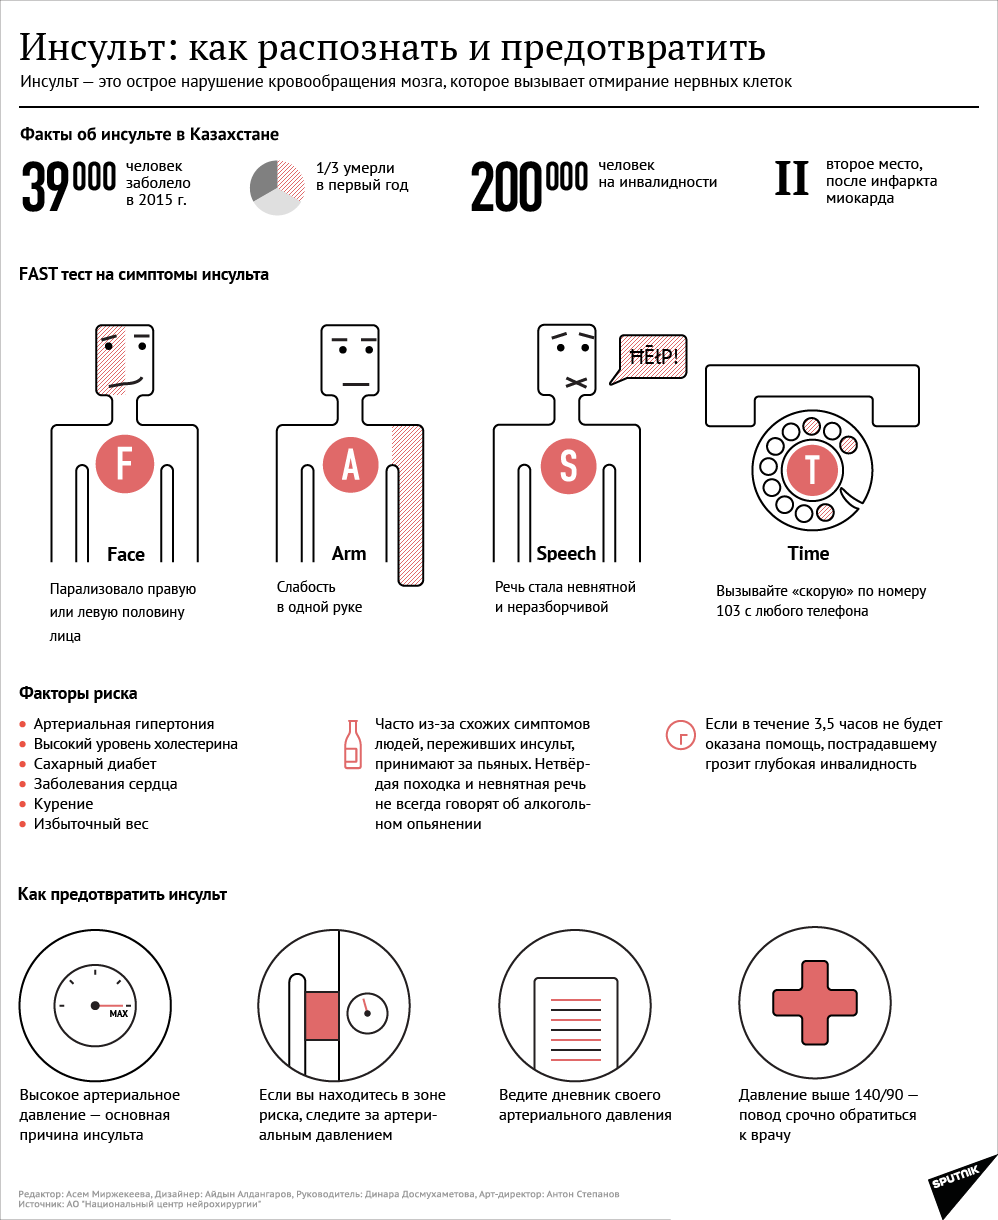 Инфографика: Инсульт: как распознать и предотвратить - Sputnik Казахстан